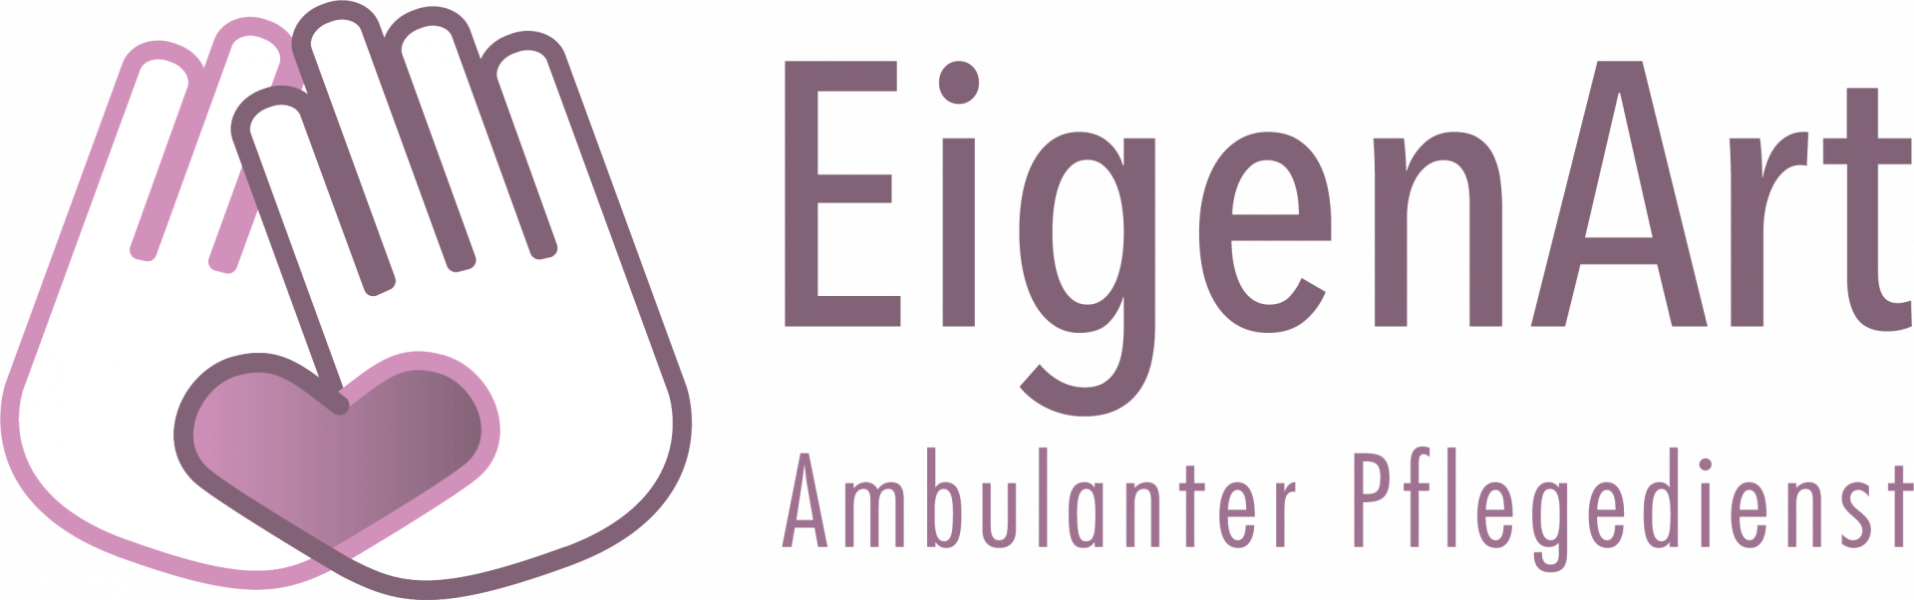 Ambulanter Pflegedienst in Bielefeld: Häusliche Pflege mit Herz